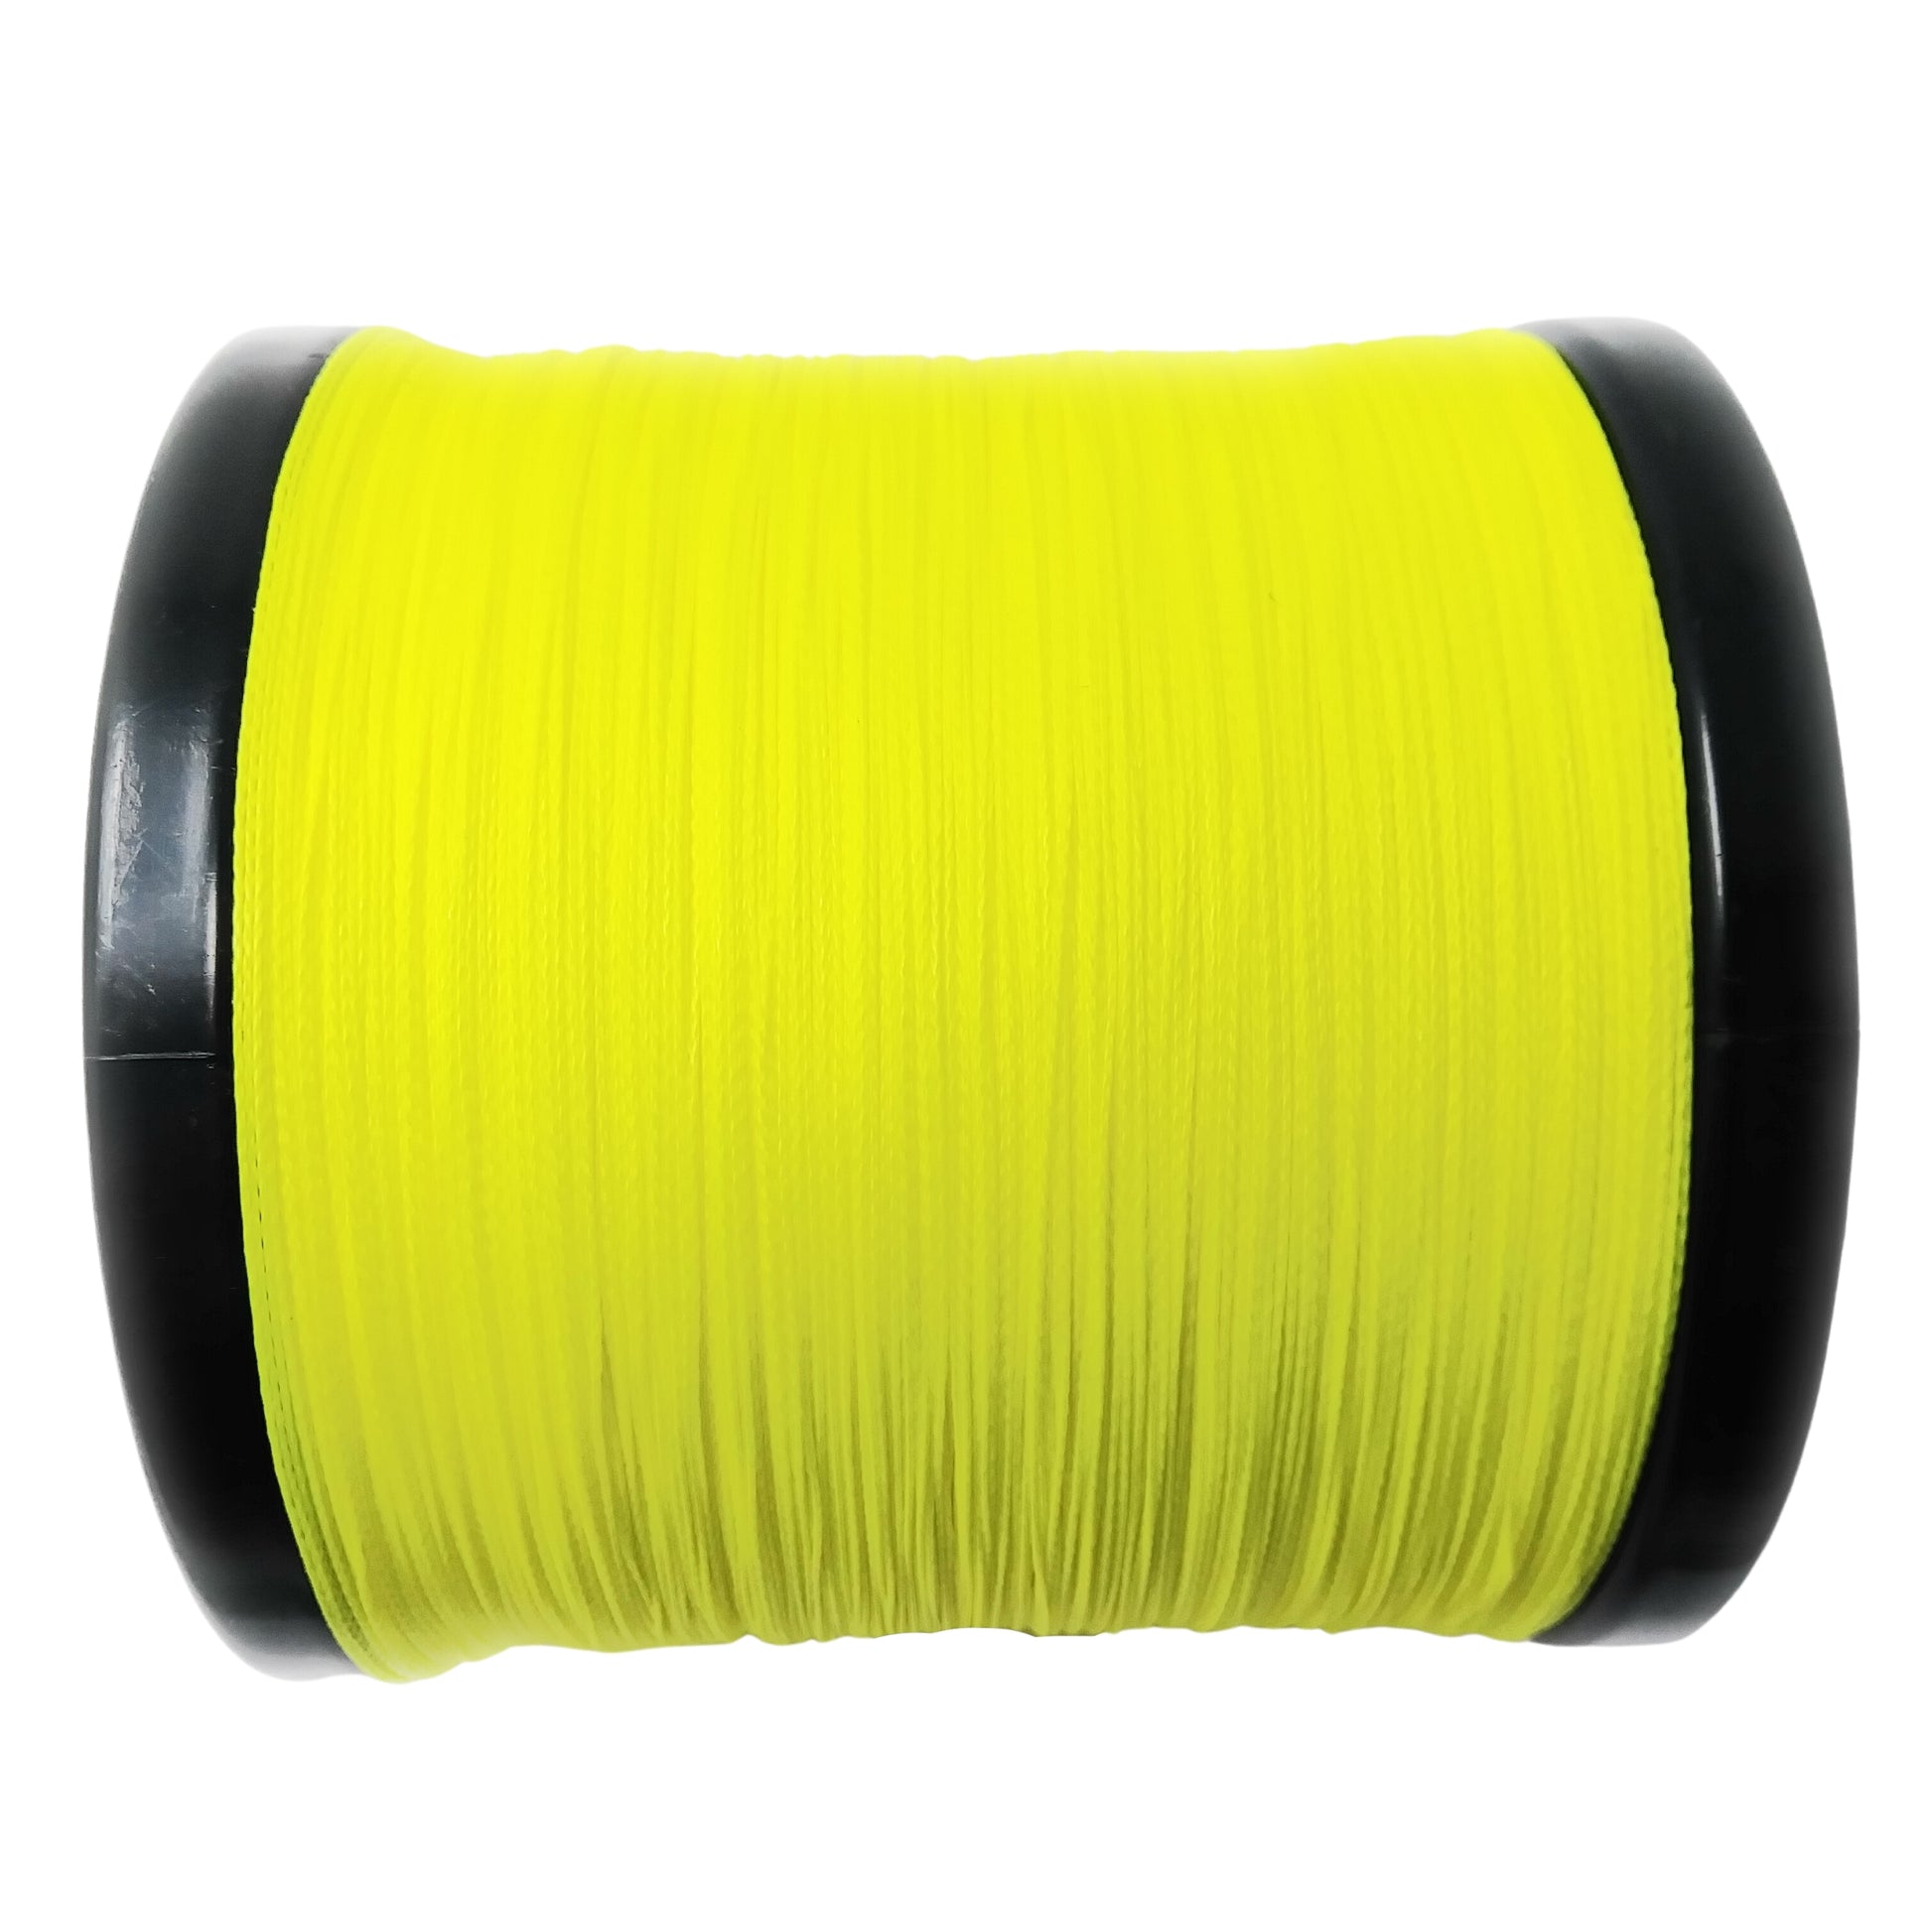 150m Spool of Surecatch Energy Braided Fishing Line - Yellow Fishing Braid  [Breaking Strain: 40lb]